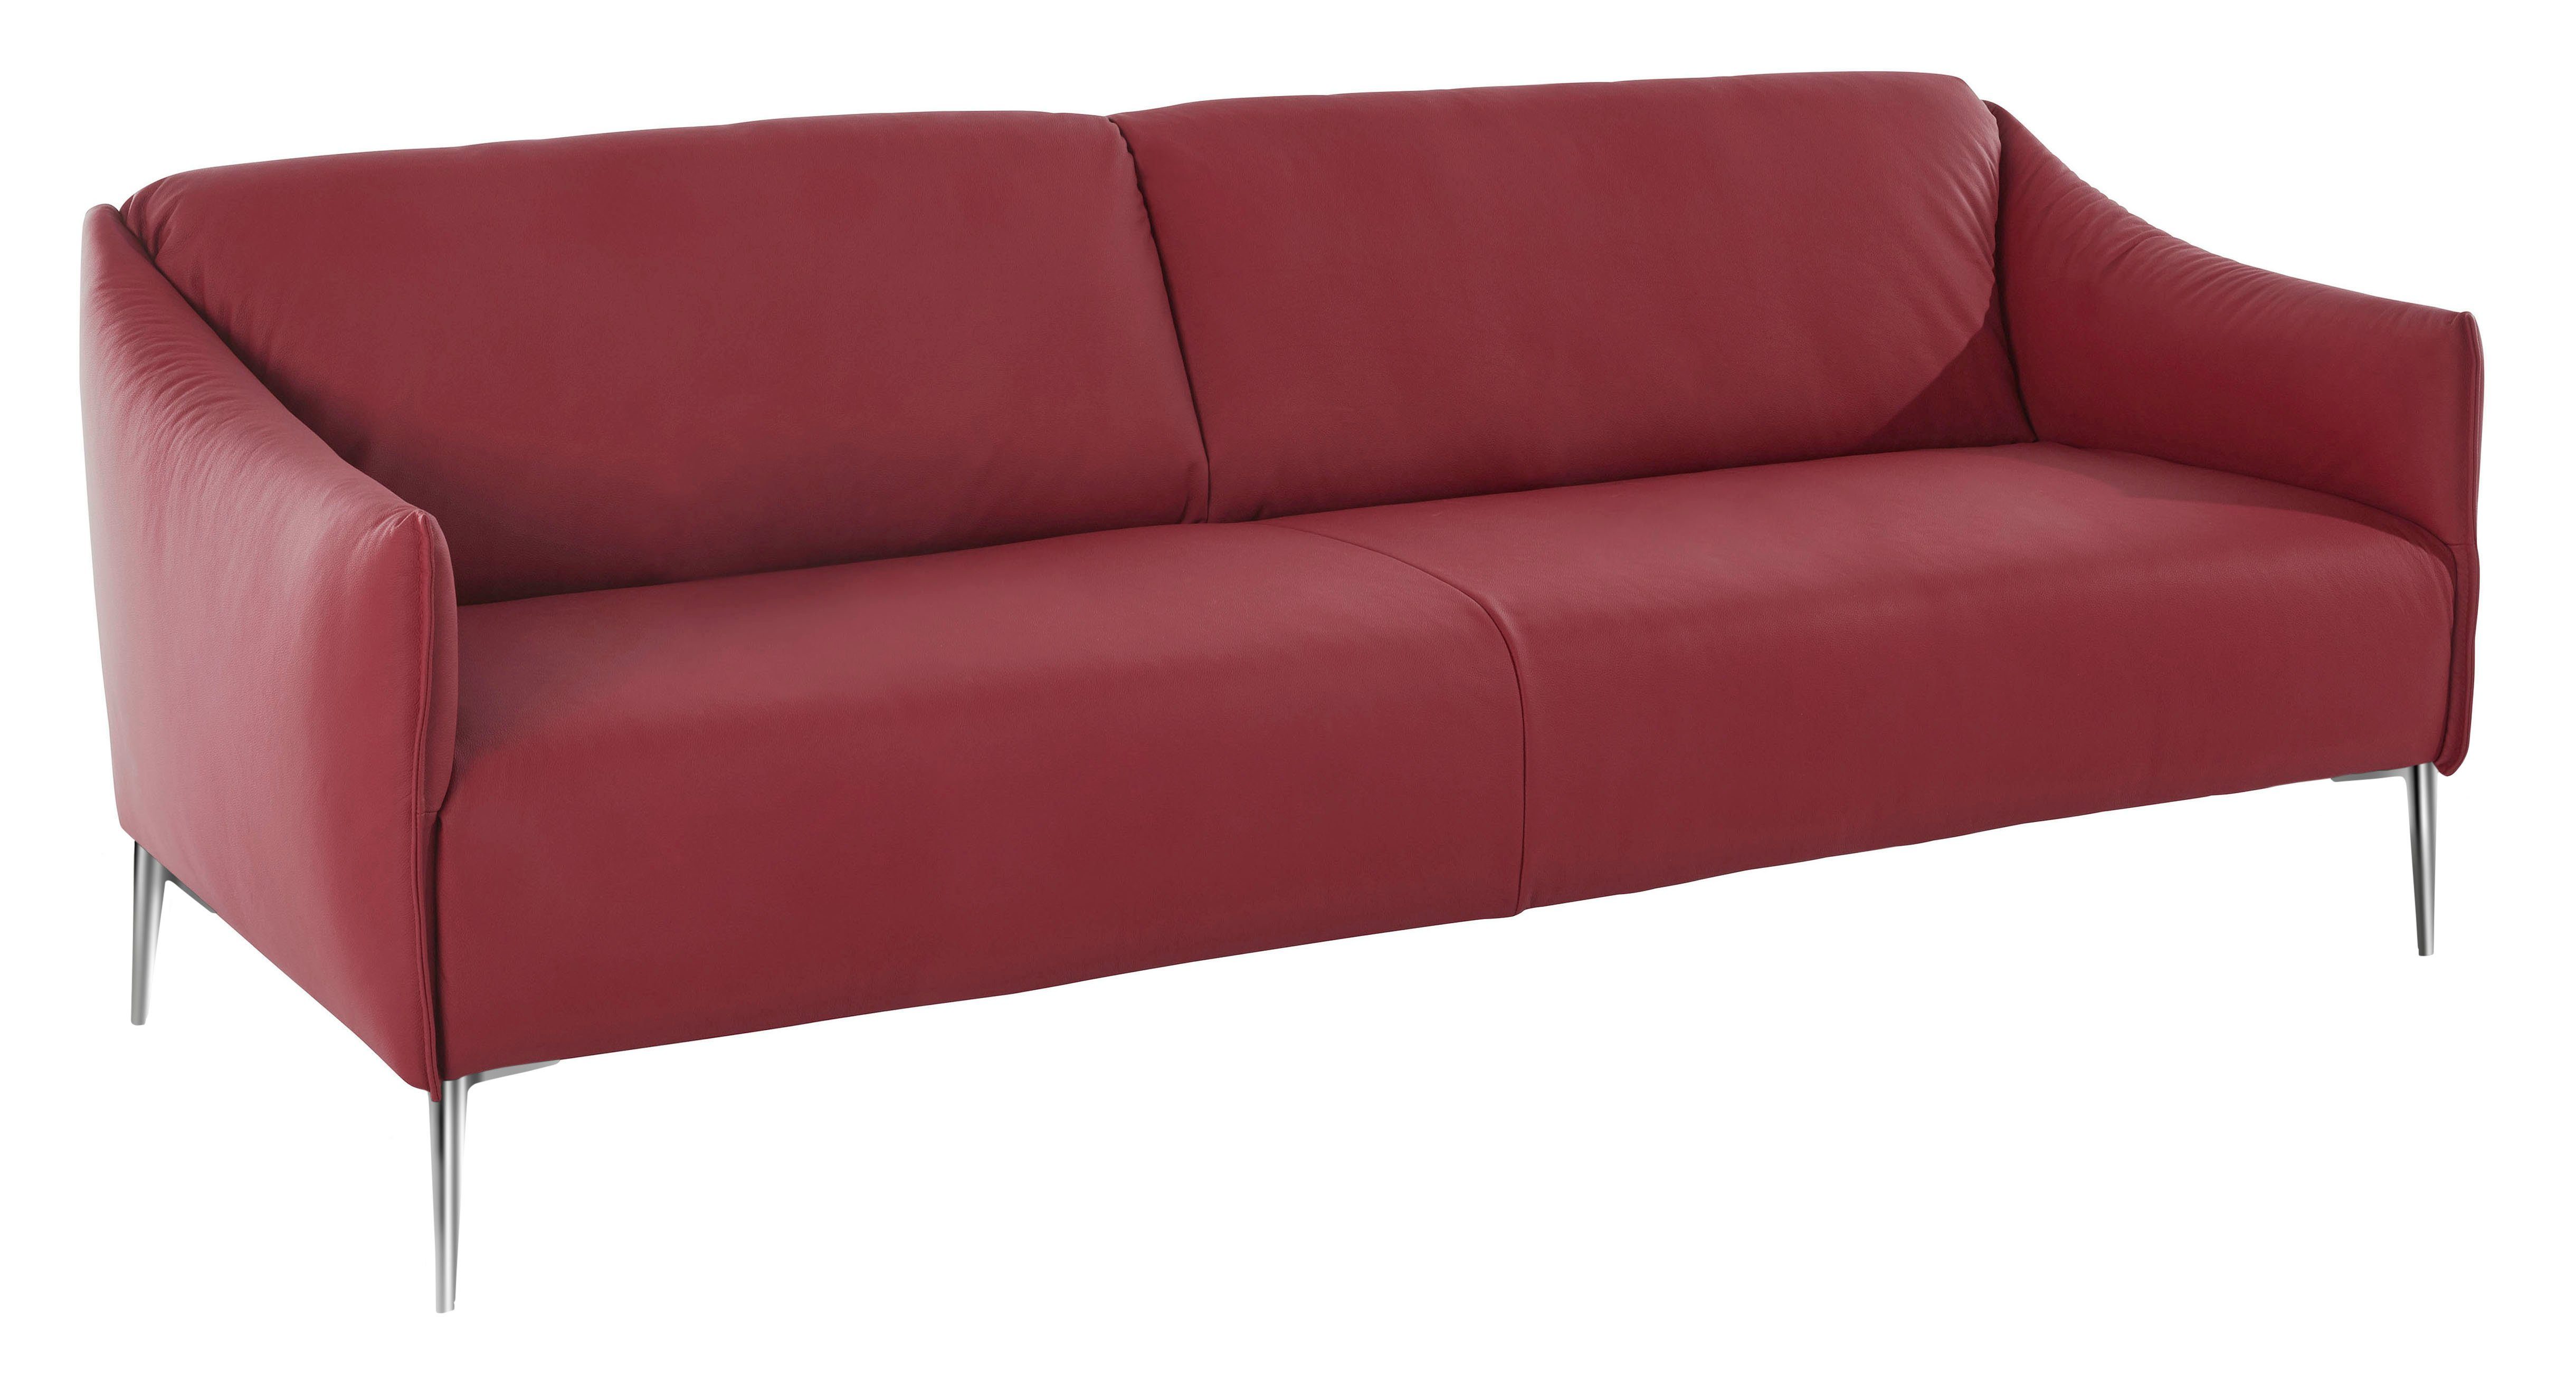 Breite 194 Z59 red sally, mit ruby in Chrom 2,5-Sitzer Metallfüßen cm W.SCHILLIG glänzend,